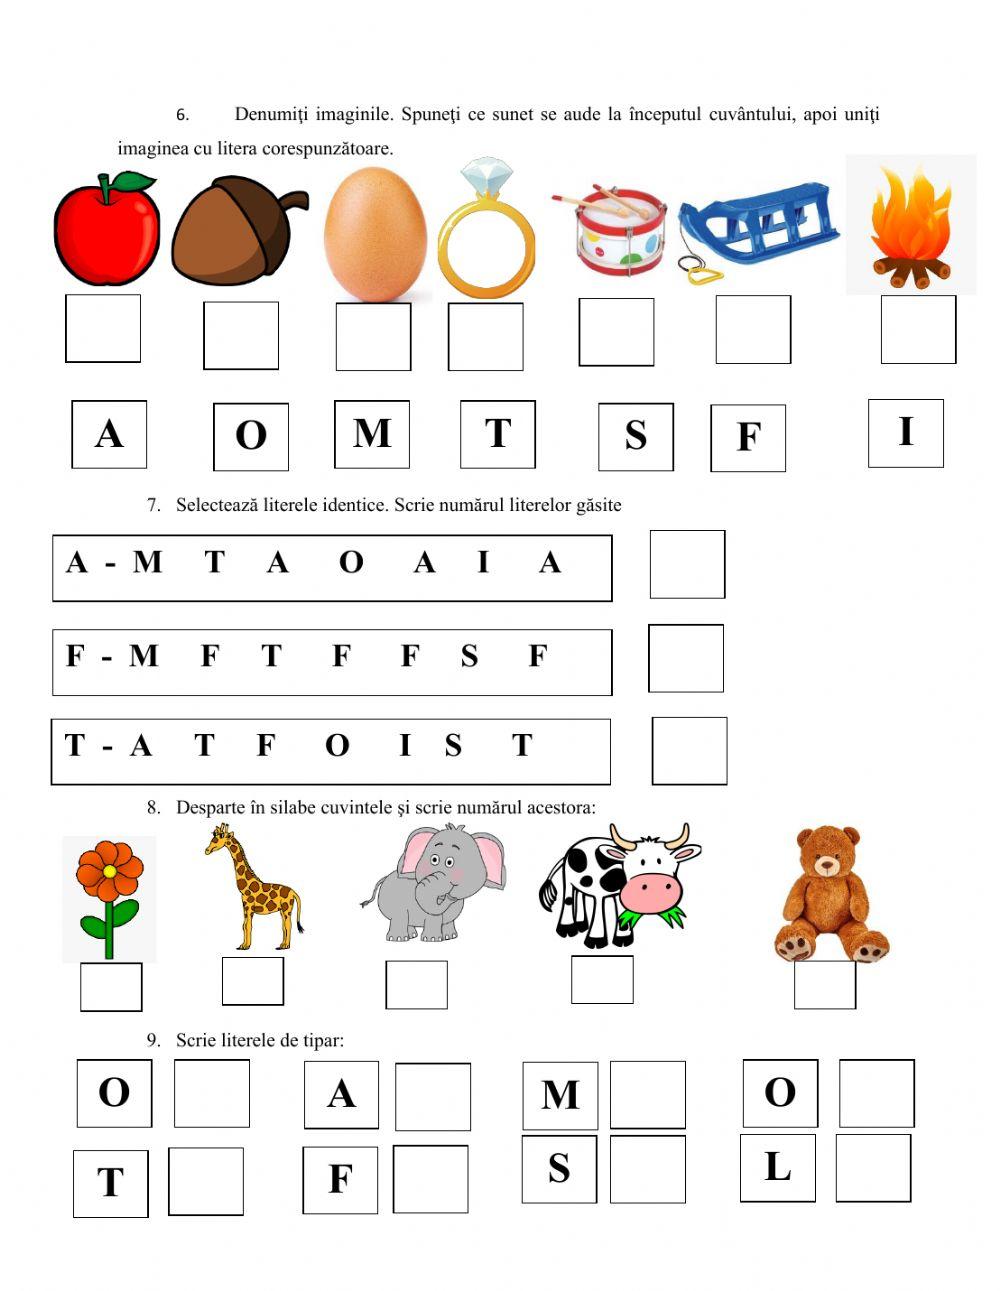 Evaluare culori, forme, obiecte identice, denumire obiecte, litere